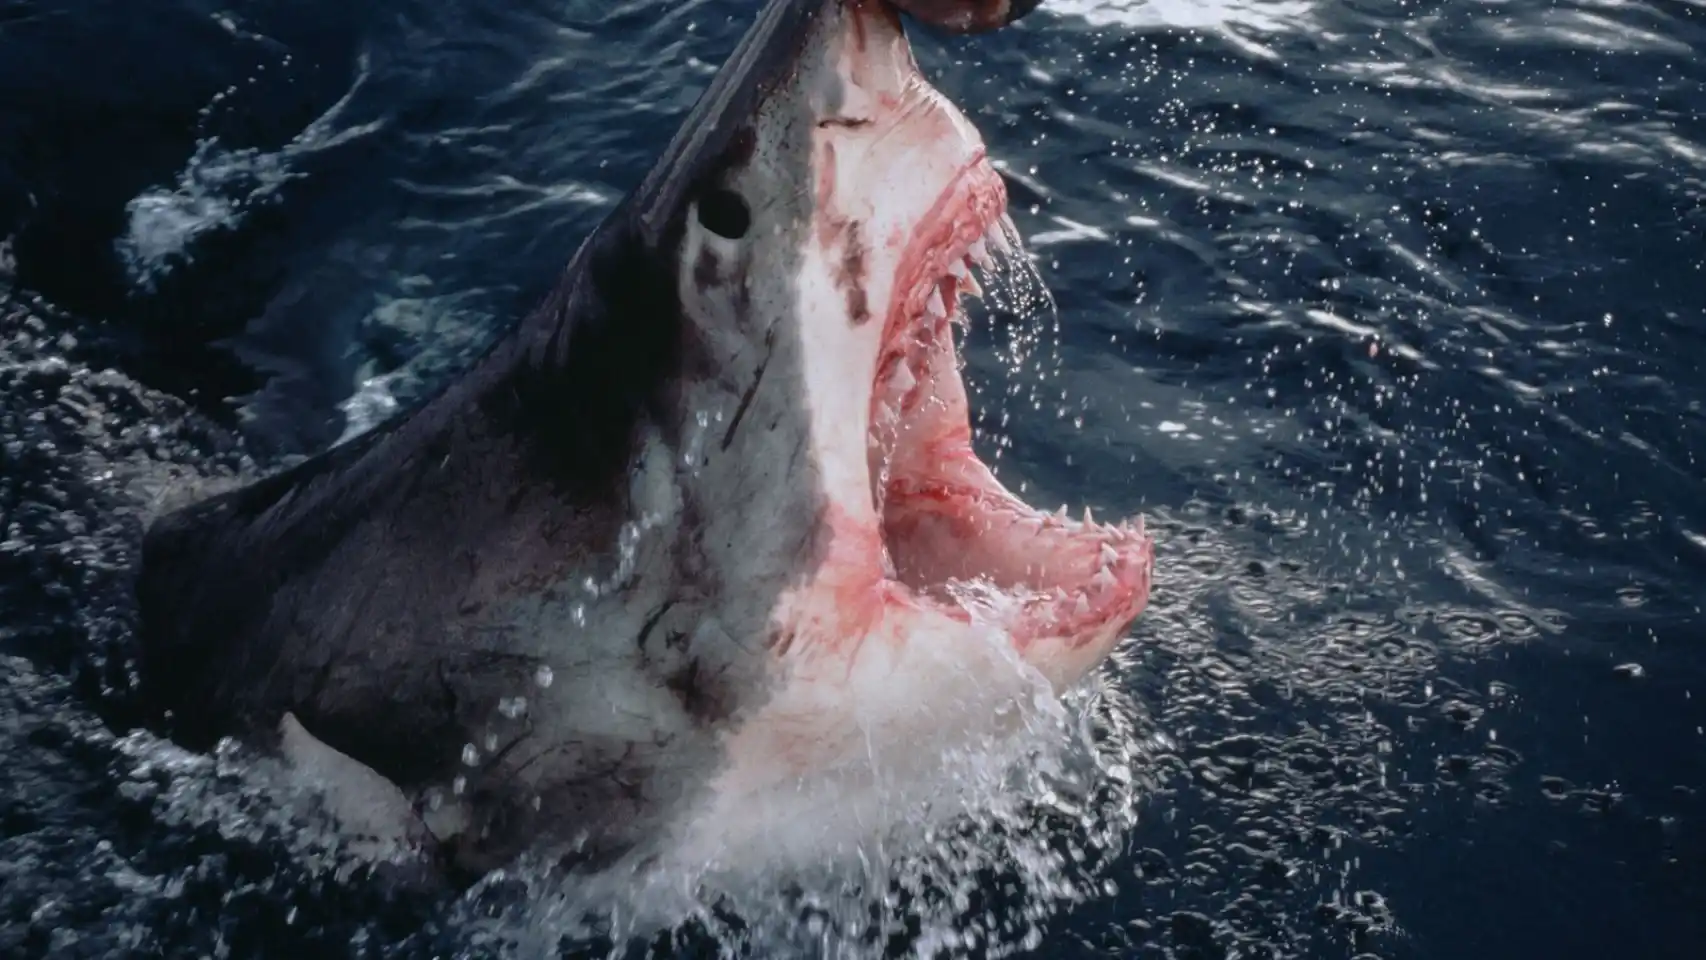 Turista mexicana es atacada por tiburón: Islas Galápagos